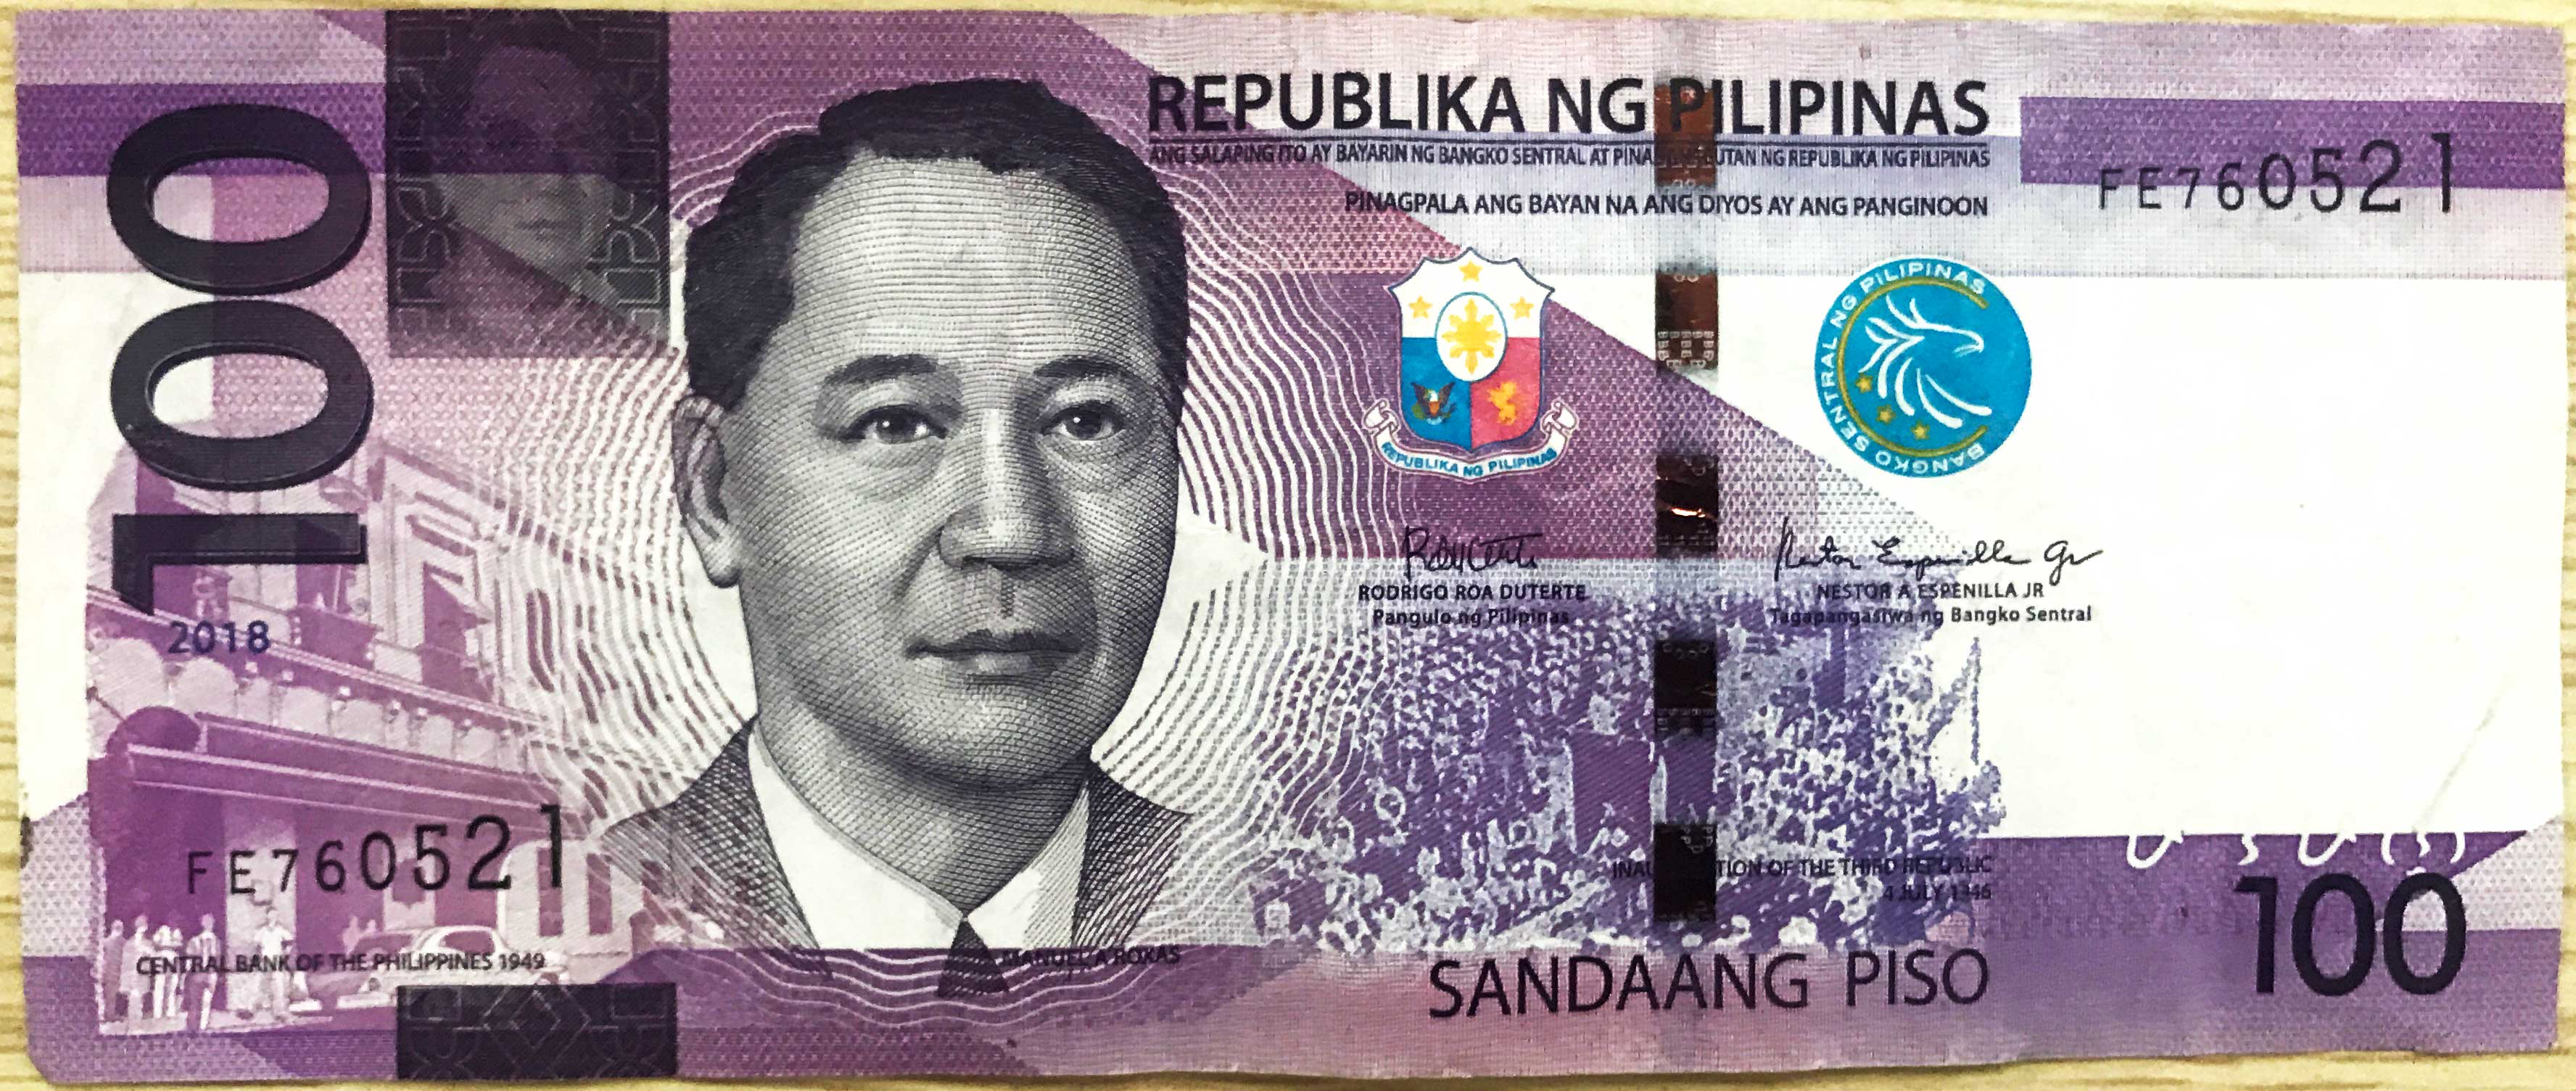 菲律宾货币_货币兑换_菲律宾刷卡_汇率-海鸥旅游网